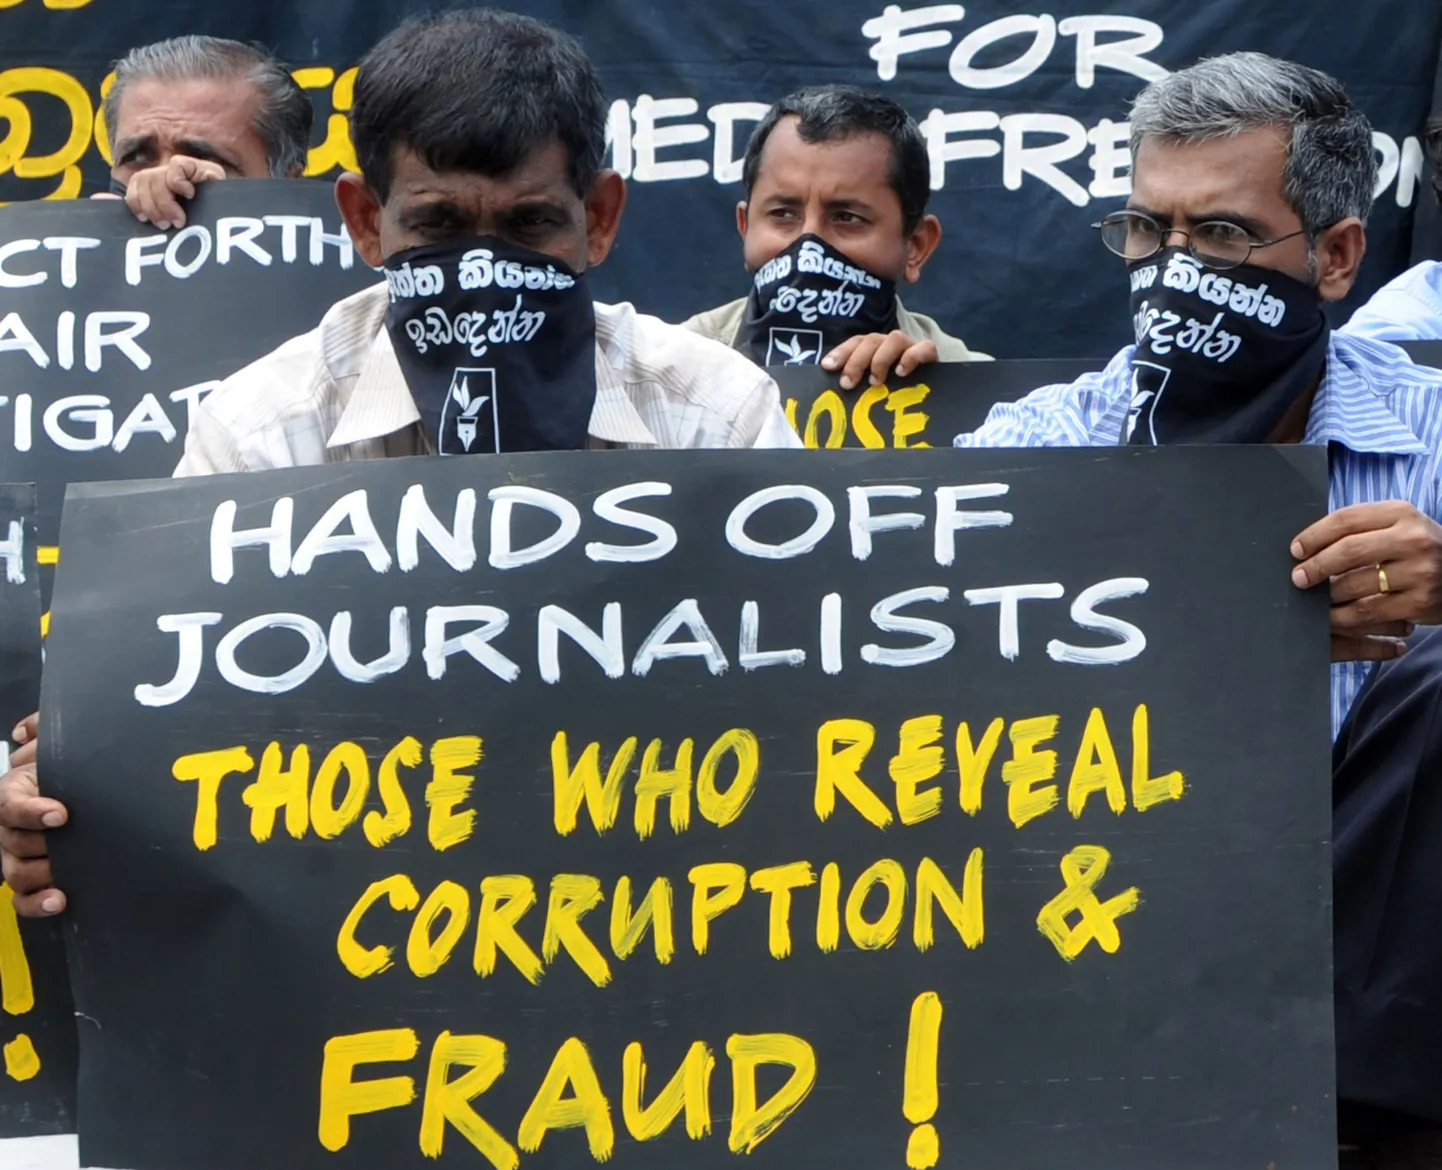 Käed eemale ajakirjanikest, kes paljastavad korruptsiooni ja pettust, teatab see loosung Sri Lankal peetud meeleavaldusel meediavabaduse eest.